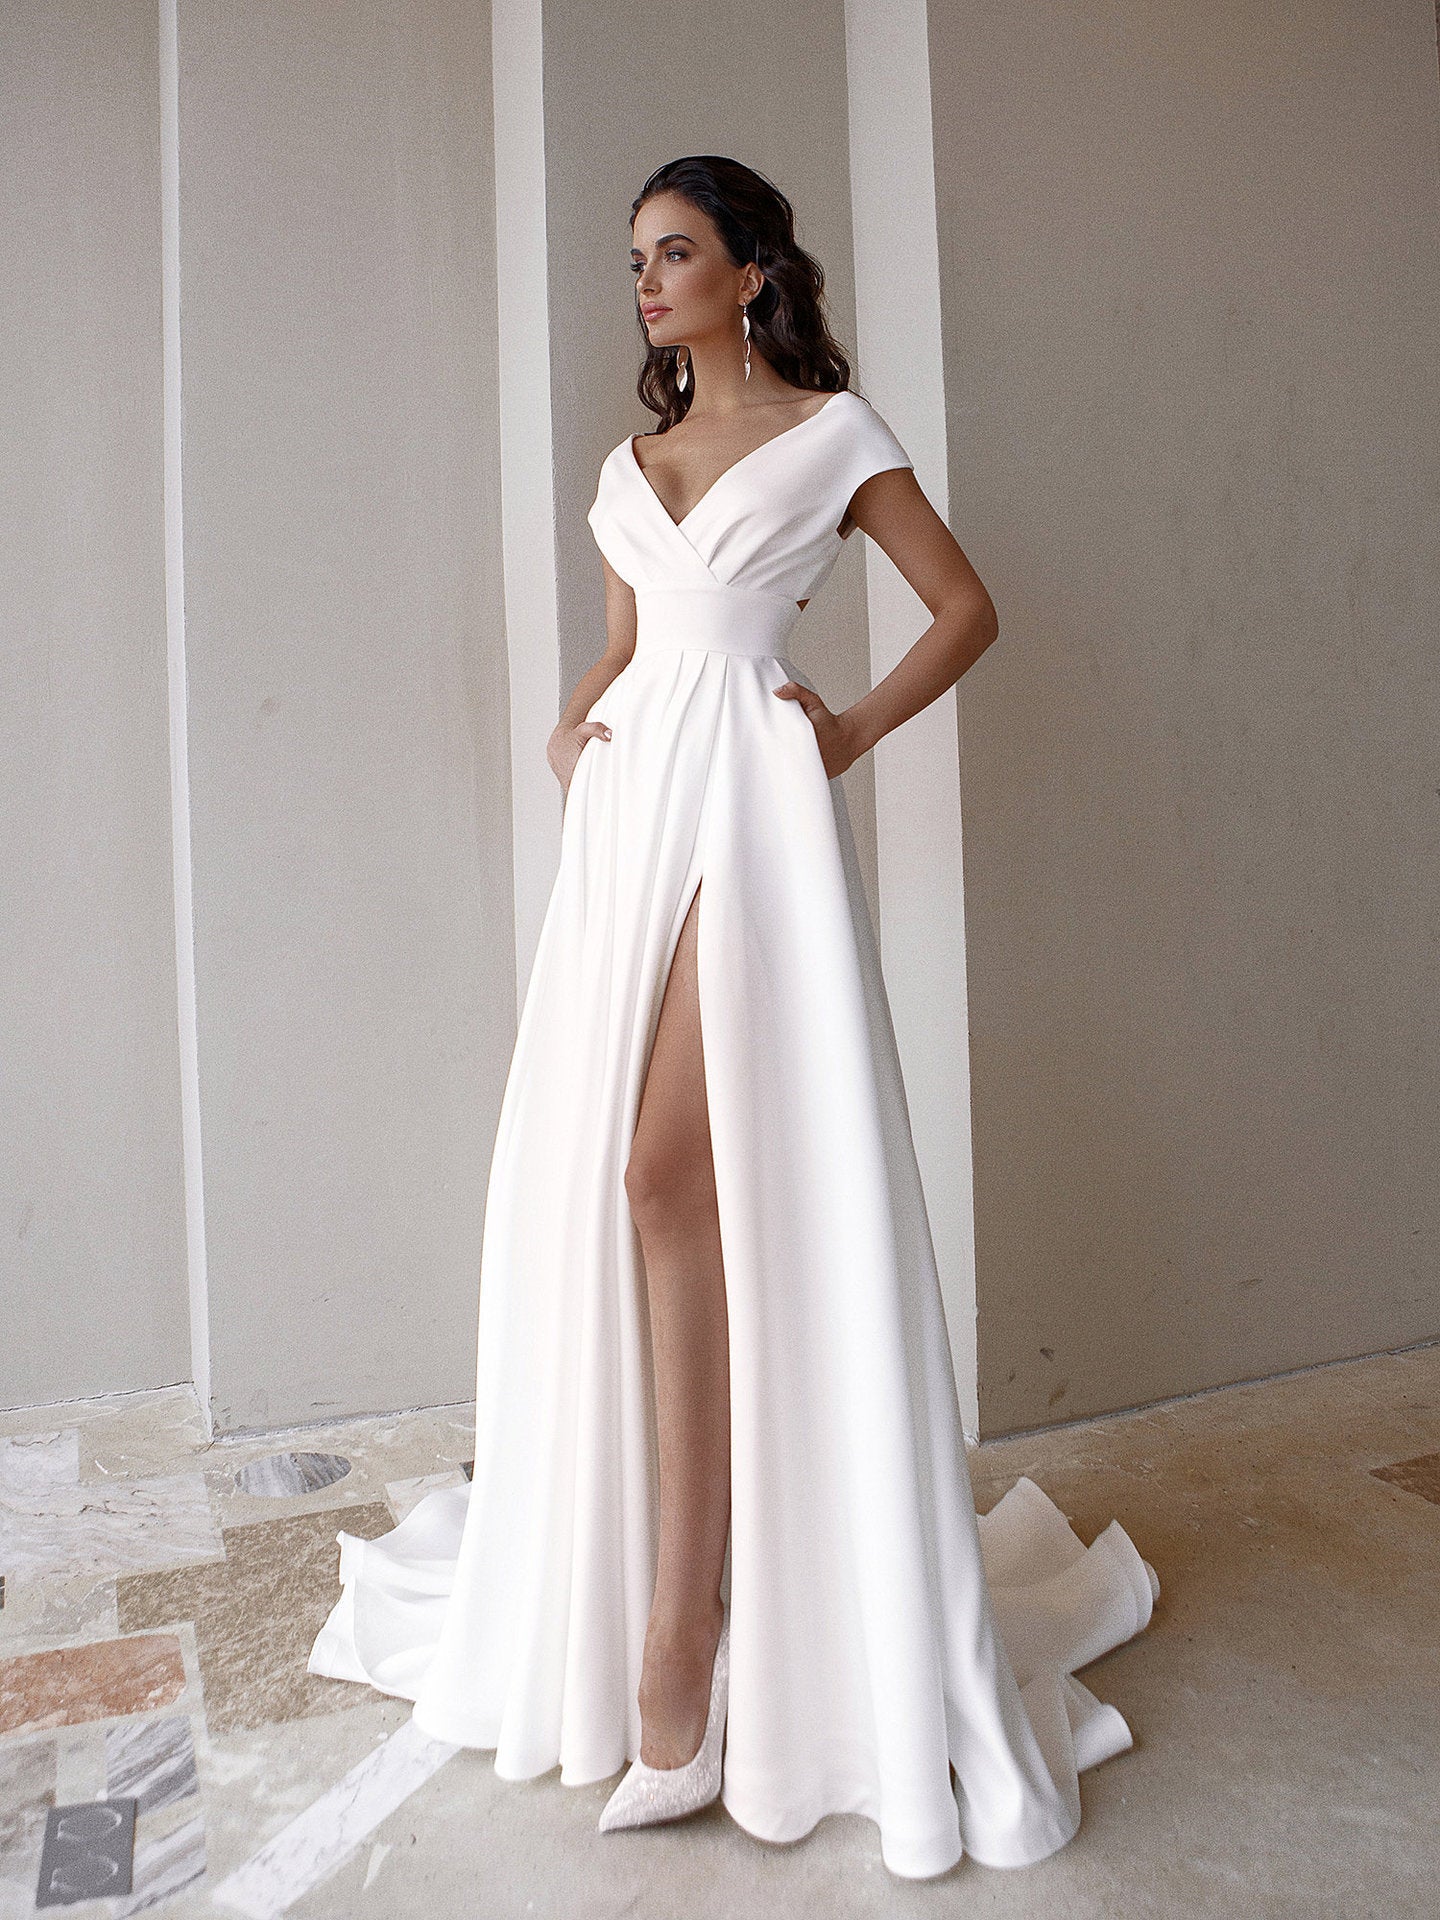 White Dress Aesthetic | Off Shoulder Elegant Flowly Dress